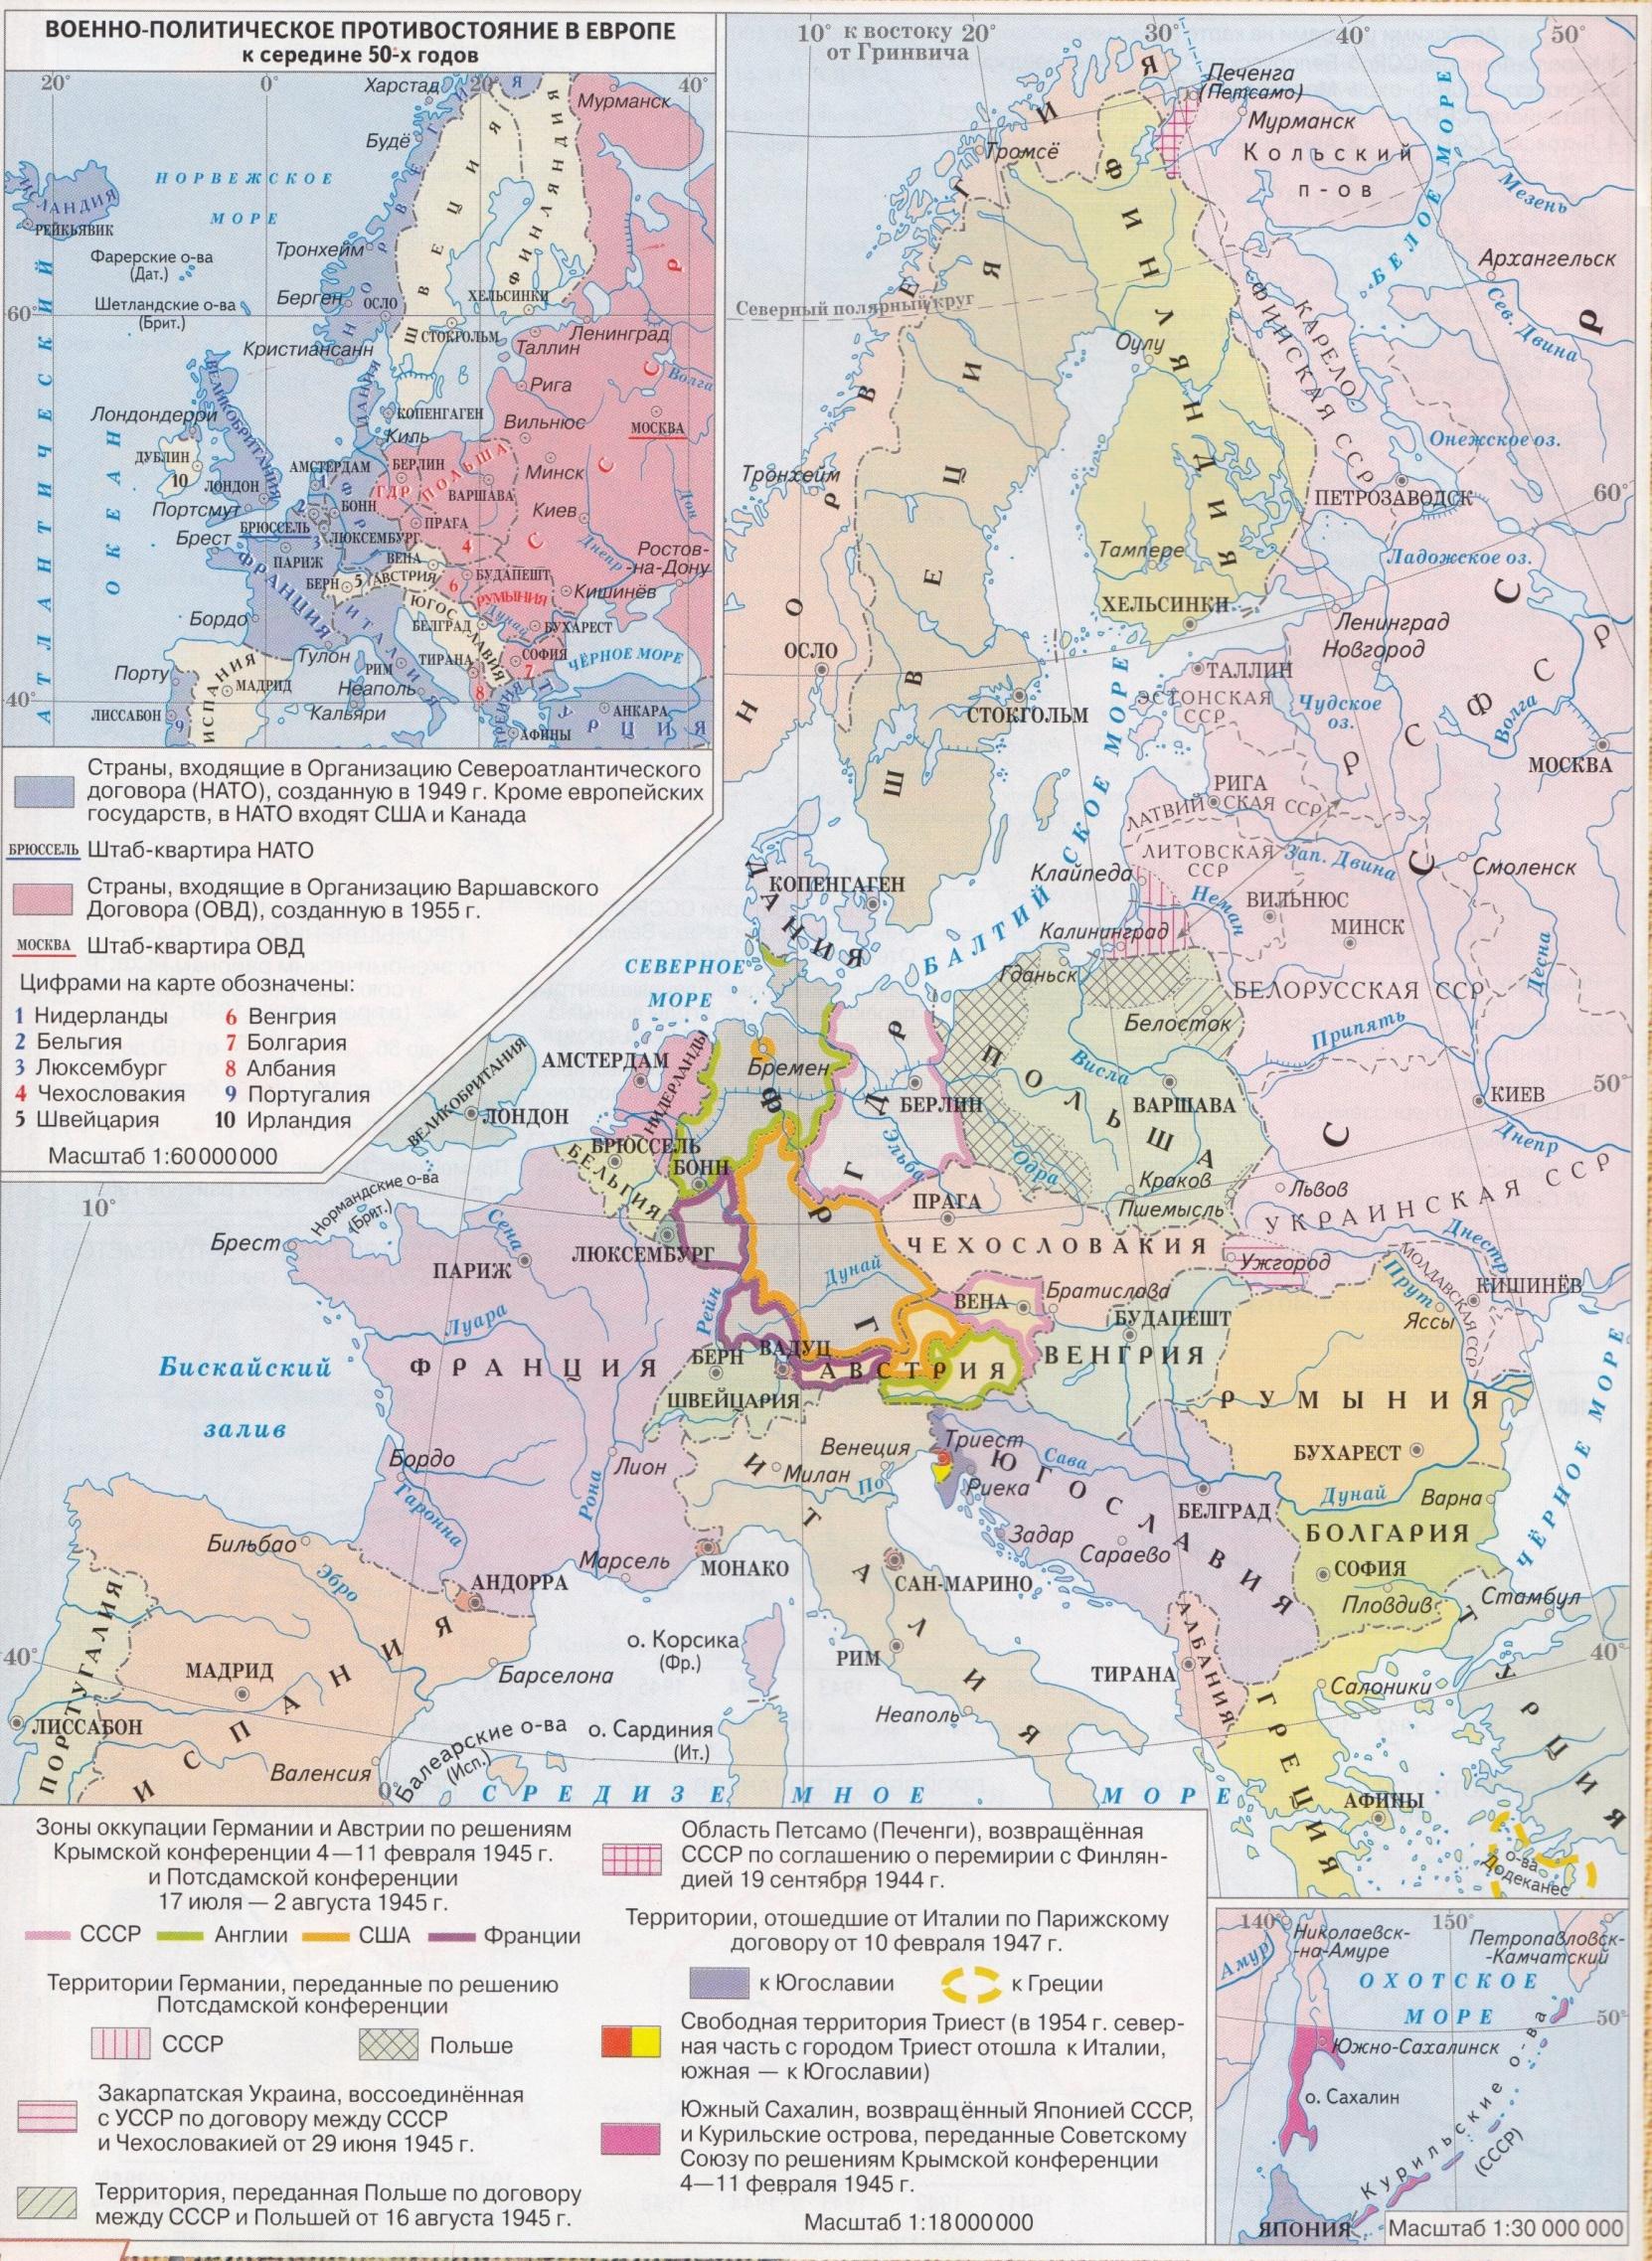 Карты история россии 20 век. Европа после второй мировой войны контурная карта. Карта Европы после 2 мировой войны. Карта изменение границ в Европе после второй мировой войны. Границы Европы после второй мировой войны.